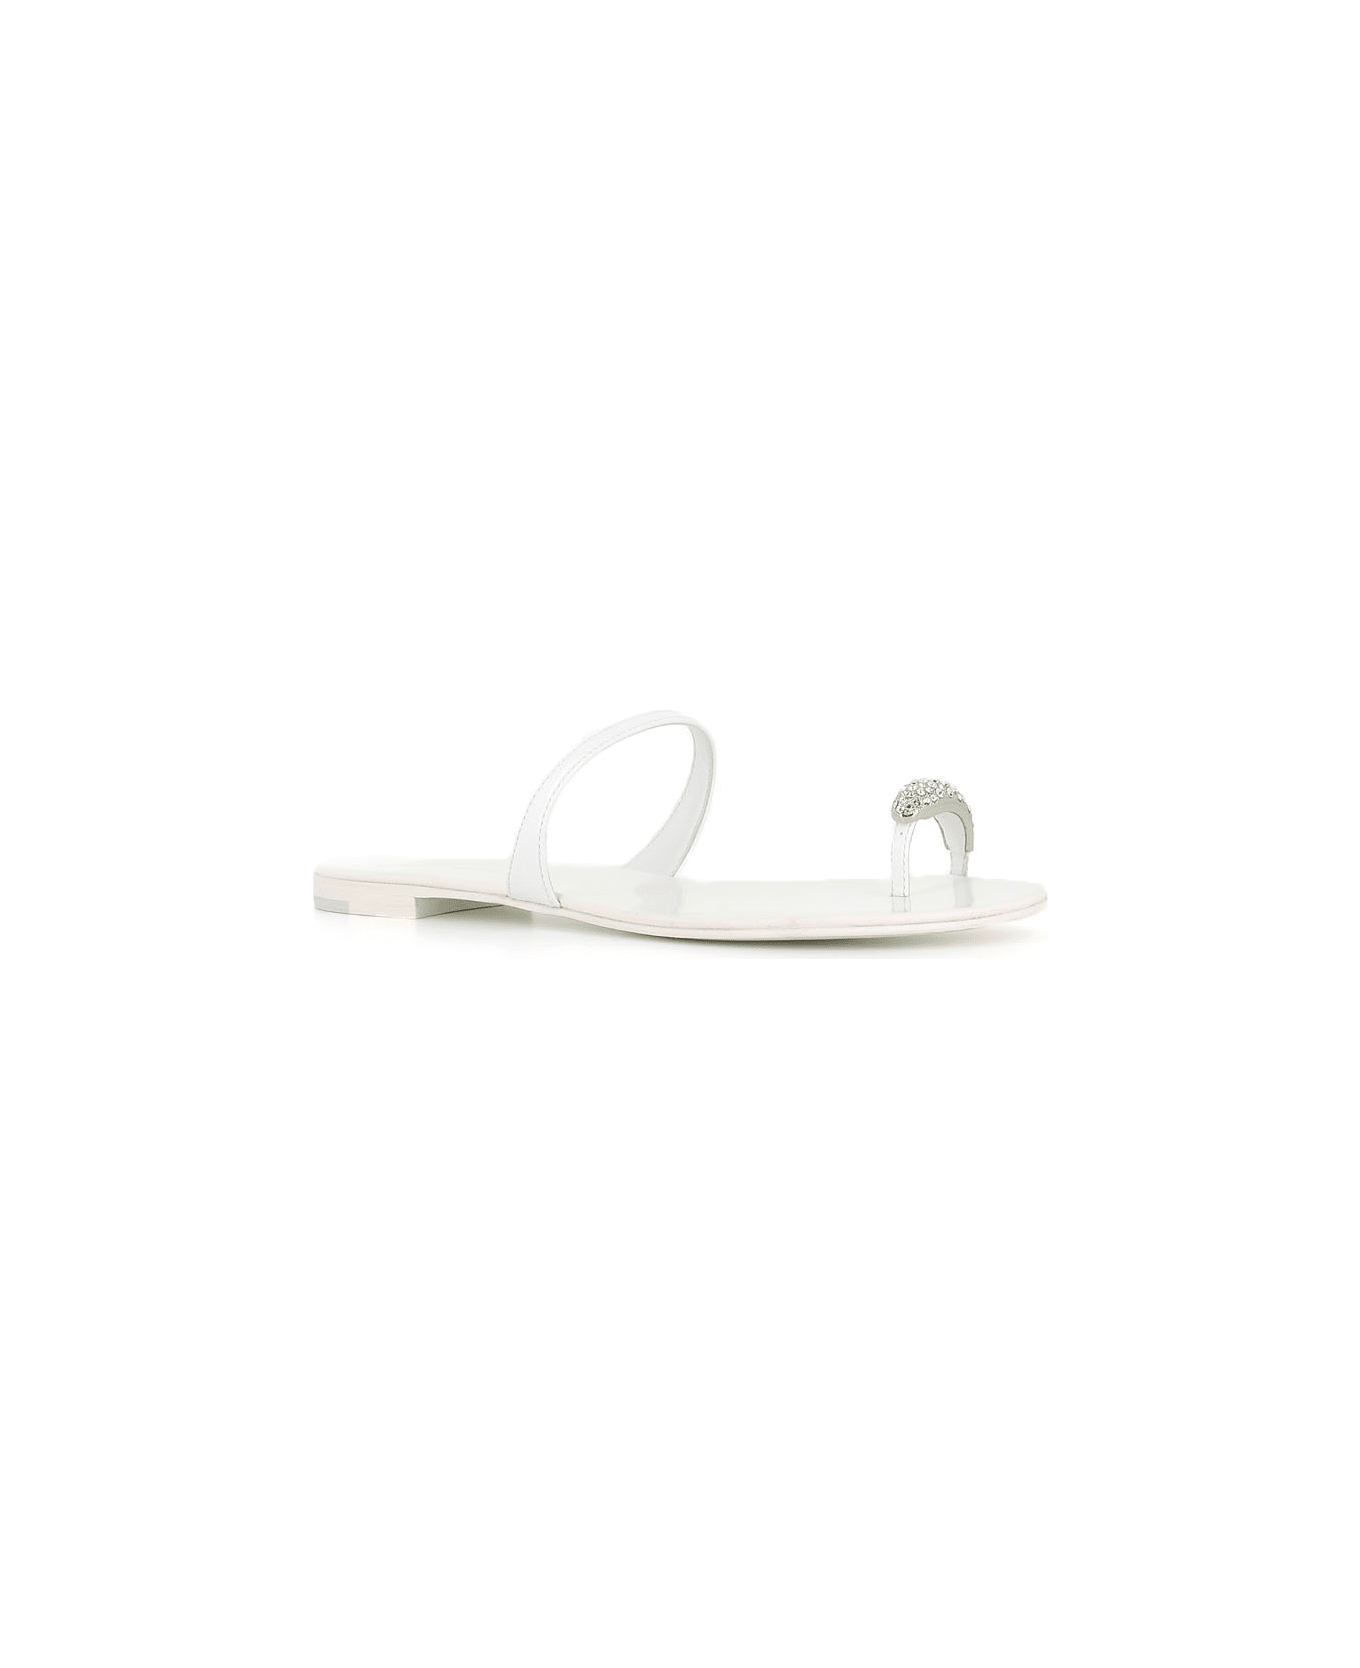 Giuseppe Zanotti Sandal Ring - White/silver